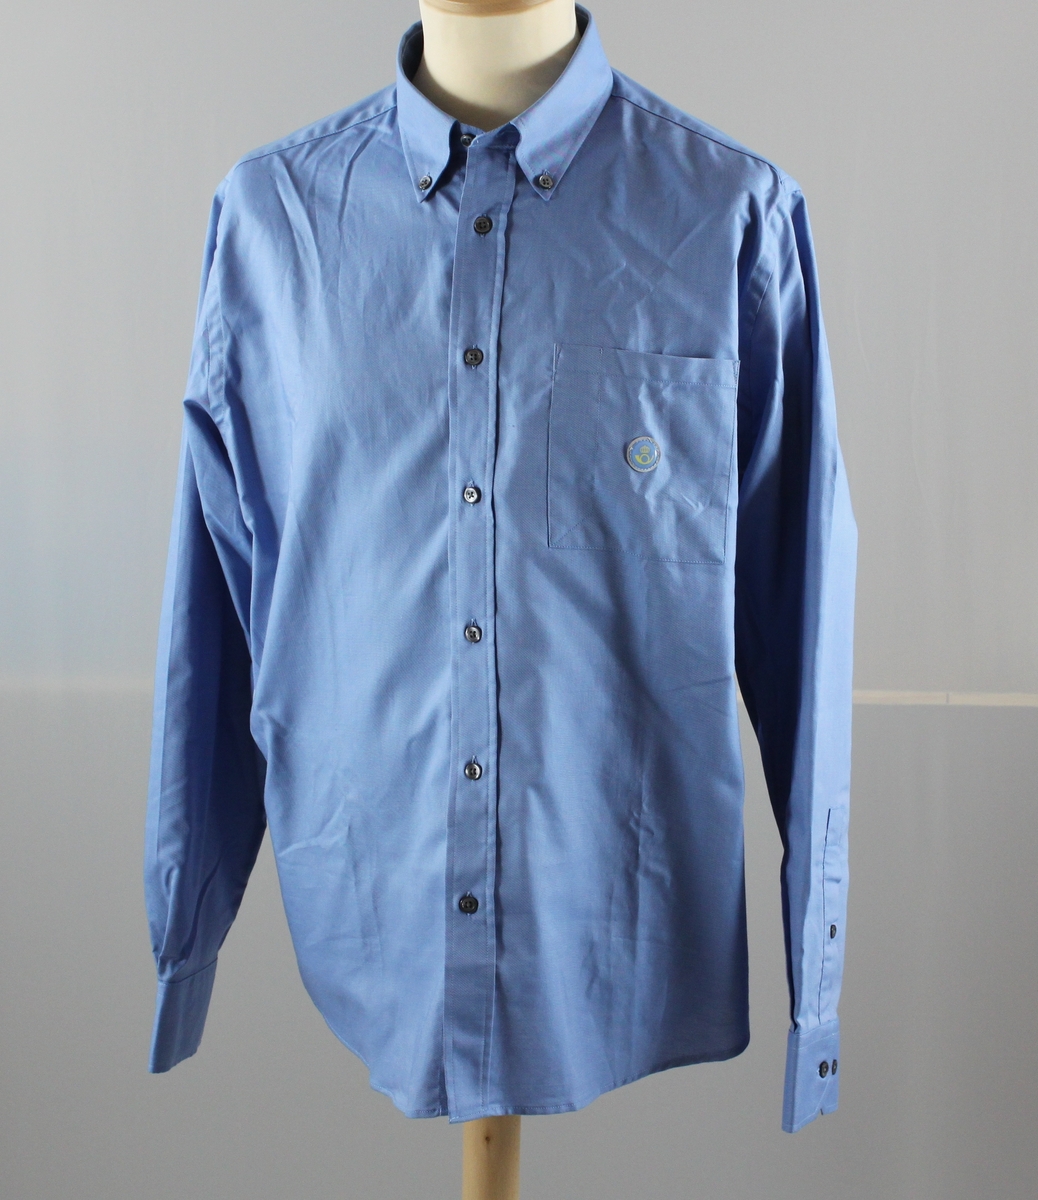 Skjorta i ljusblått med långa ärmar. En bröstficka till vänster och ett reflexmärke med Postens symbol på den. Märkt "herr" och storlek 40.